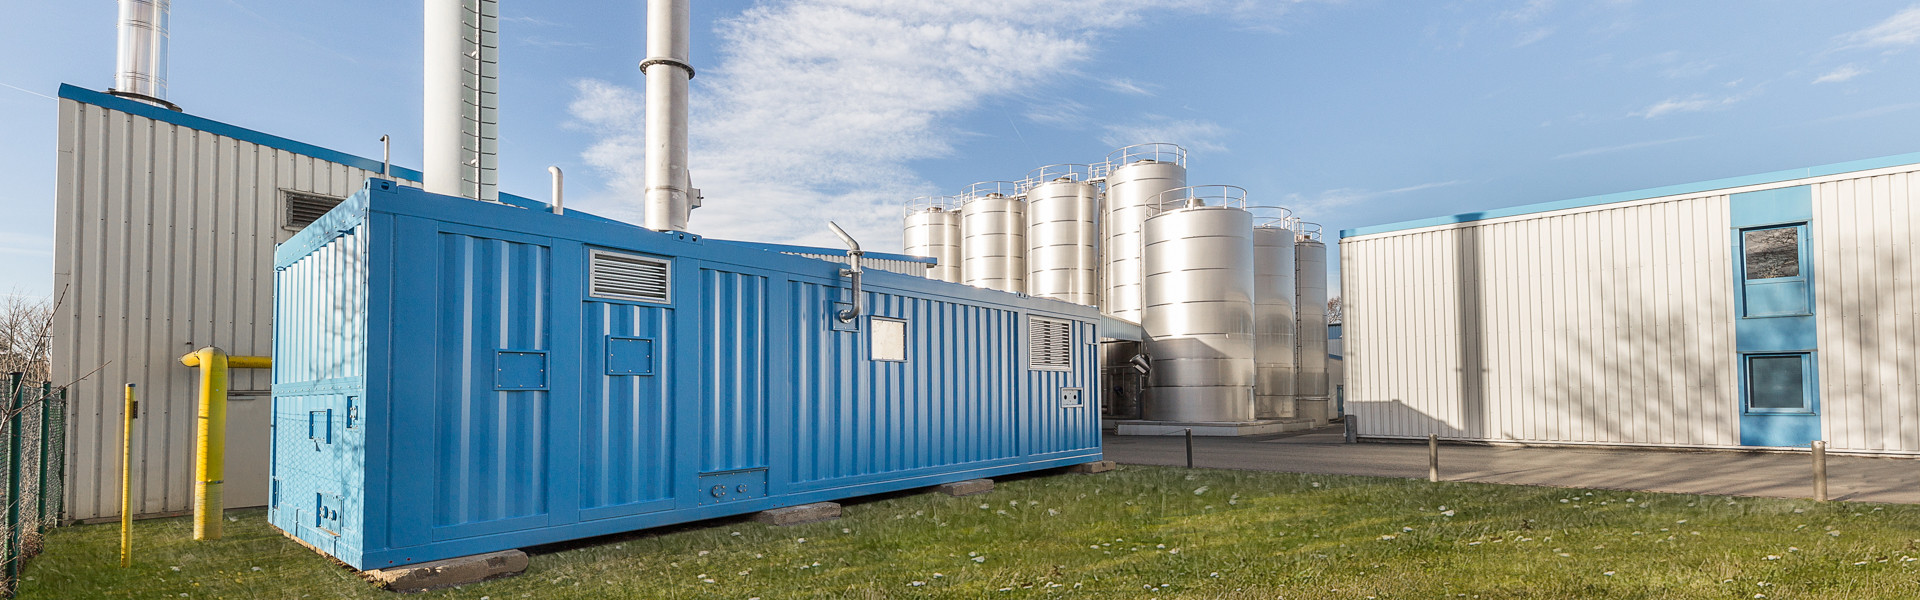 Mobiler Dampferzeuger bei Vogtlandmilch in Plauen